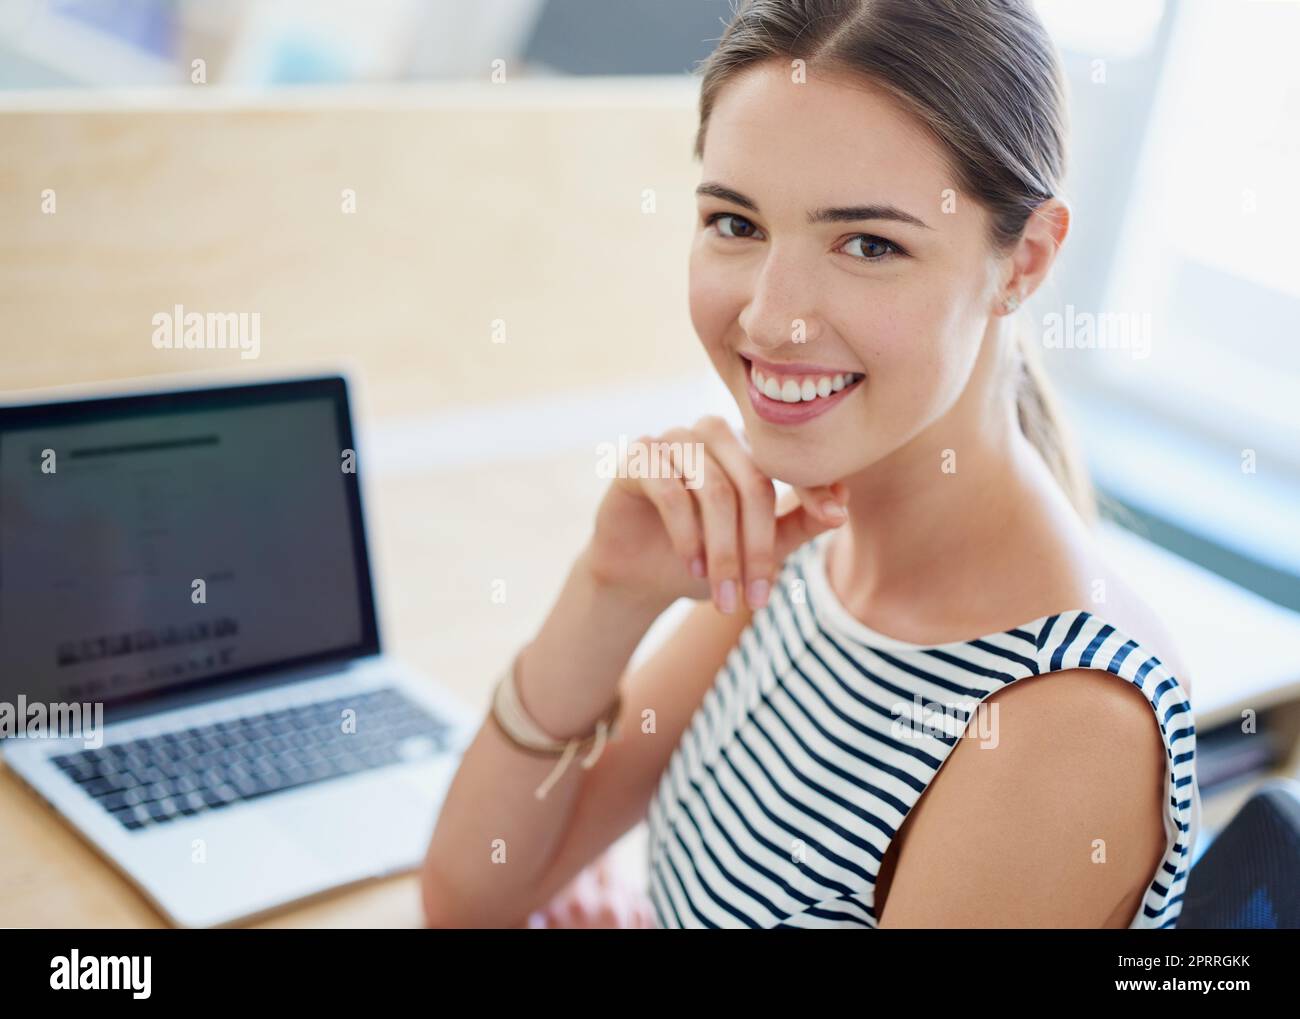 Ihre Karriere ist im Trend. Porträt einer lächelnden jungen Geschäftsfrau, die mit einem Laptop an einem Tisch in einem Büro sitzt. Stockfoto